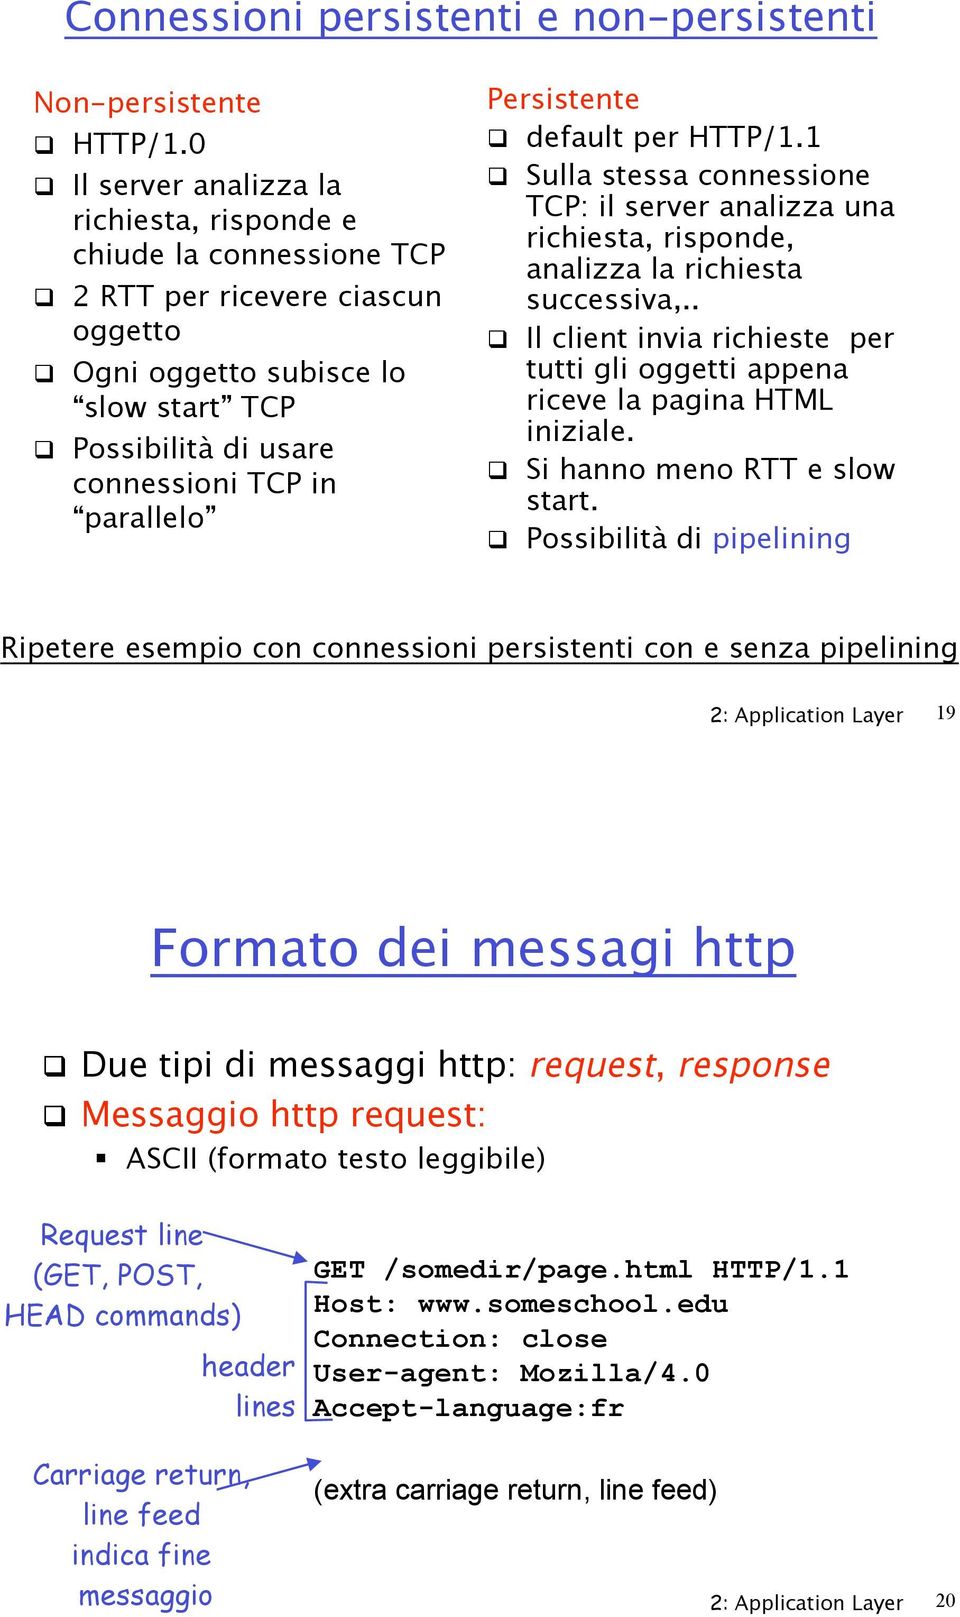 1! Sulla stessa connessione TCP: il analizza una richiesta, risponde, analizza la richiesta successiva,..! Il client invia richieste per tutti gli oggetti appena riceve la pagina HTML iniziale.